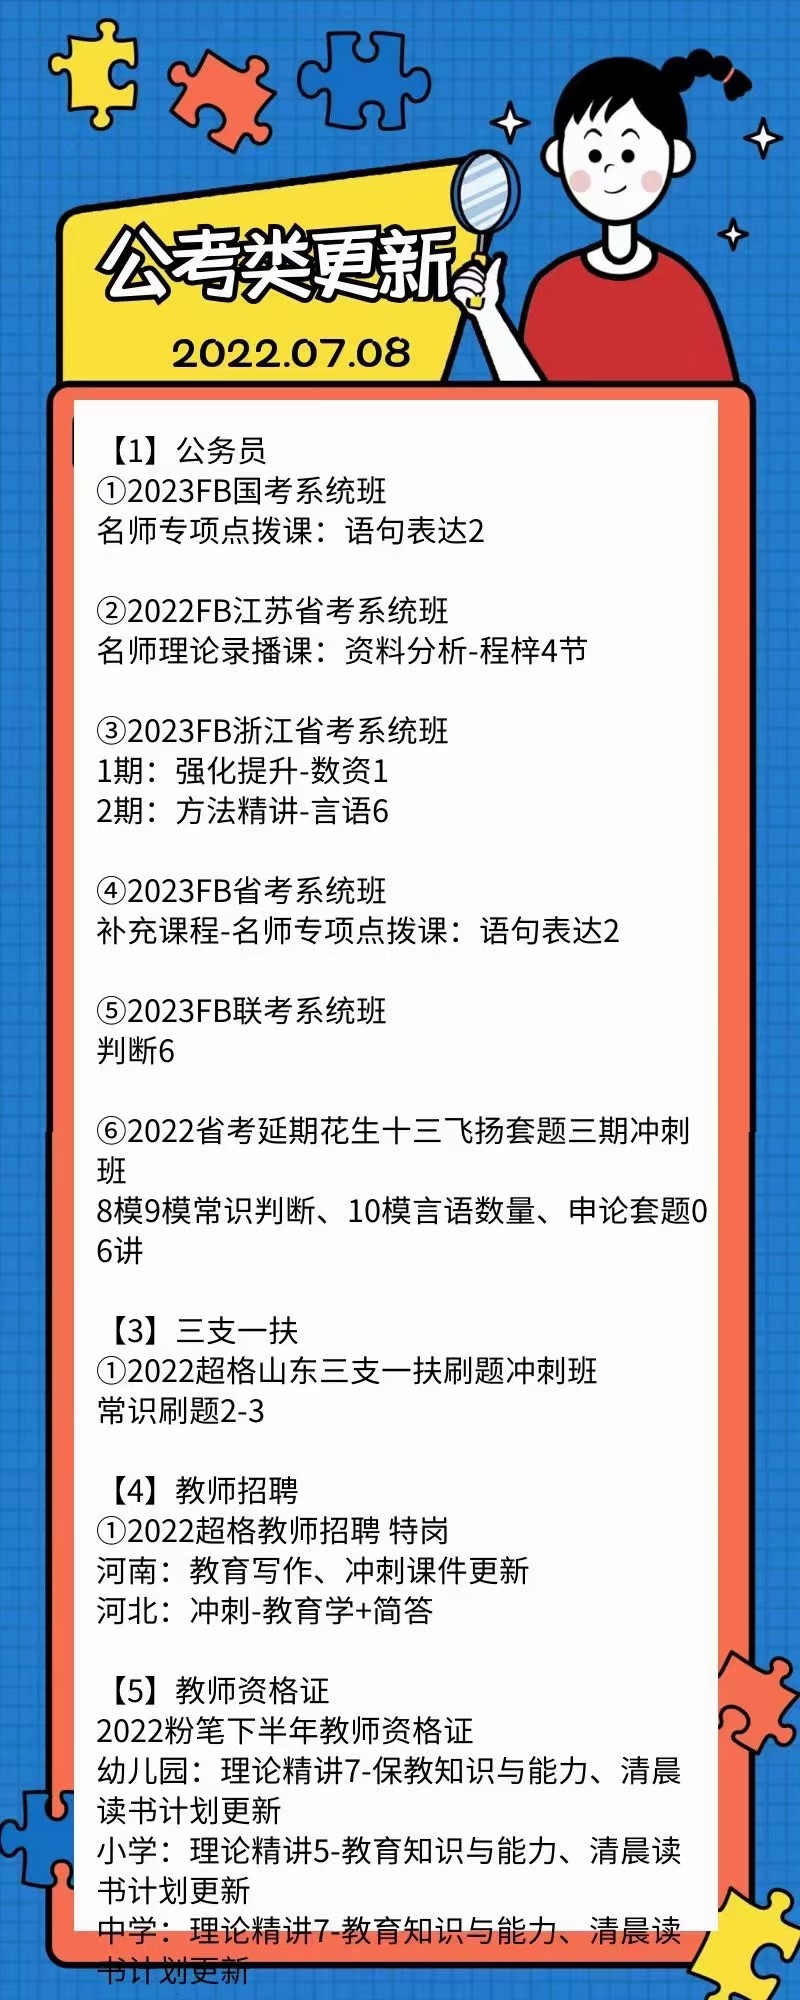 萌学院区07月08号更新 公务员 事业单位2022 教师招聘